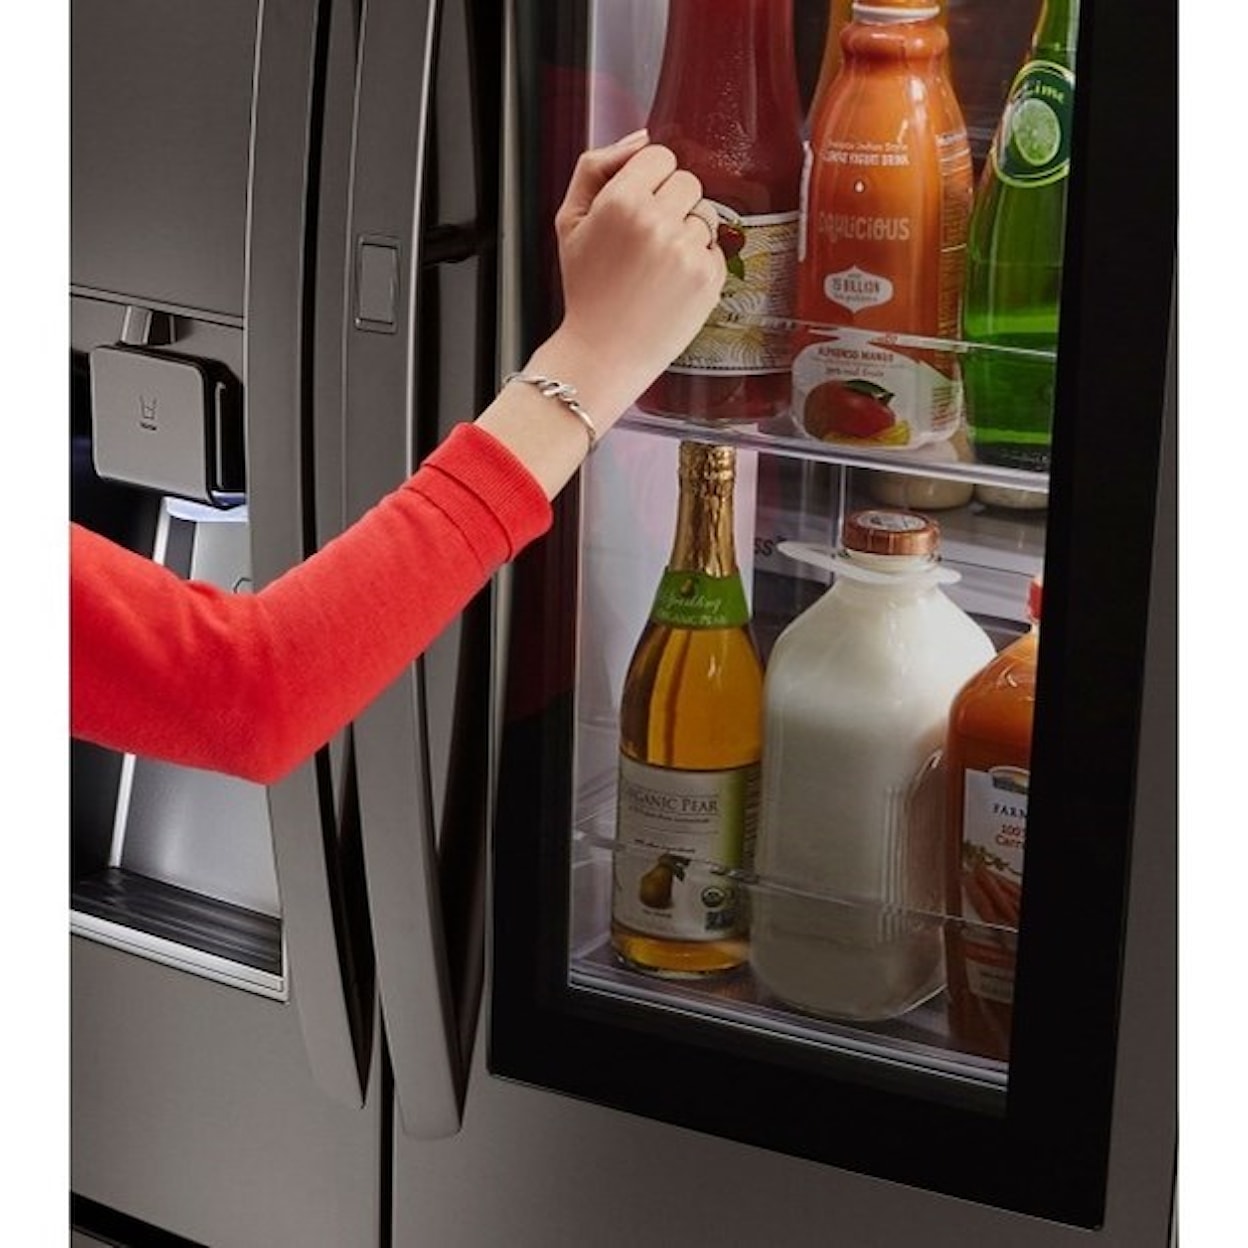 LG Appliances French Door Refrigerators 30 Cu. Ft. Door-in-Door® French Door Fridge